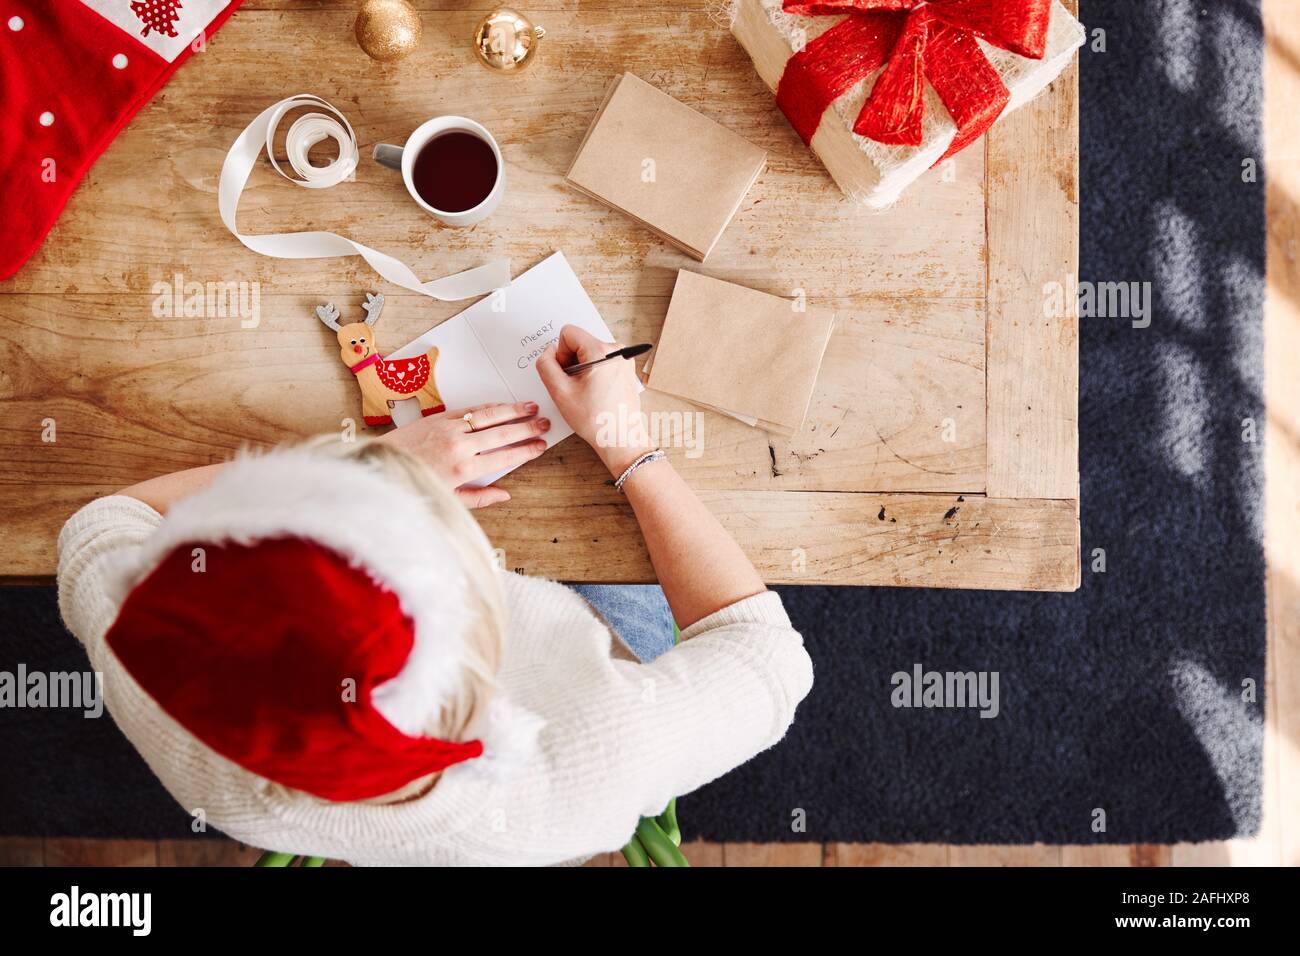 Passage tourné à la femme dans l'écriture sur carte de Noël et cadeau Emballage Wearing Santa Hat Banque D'Images